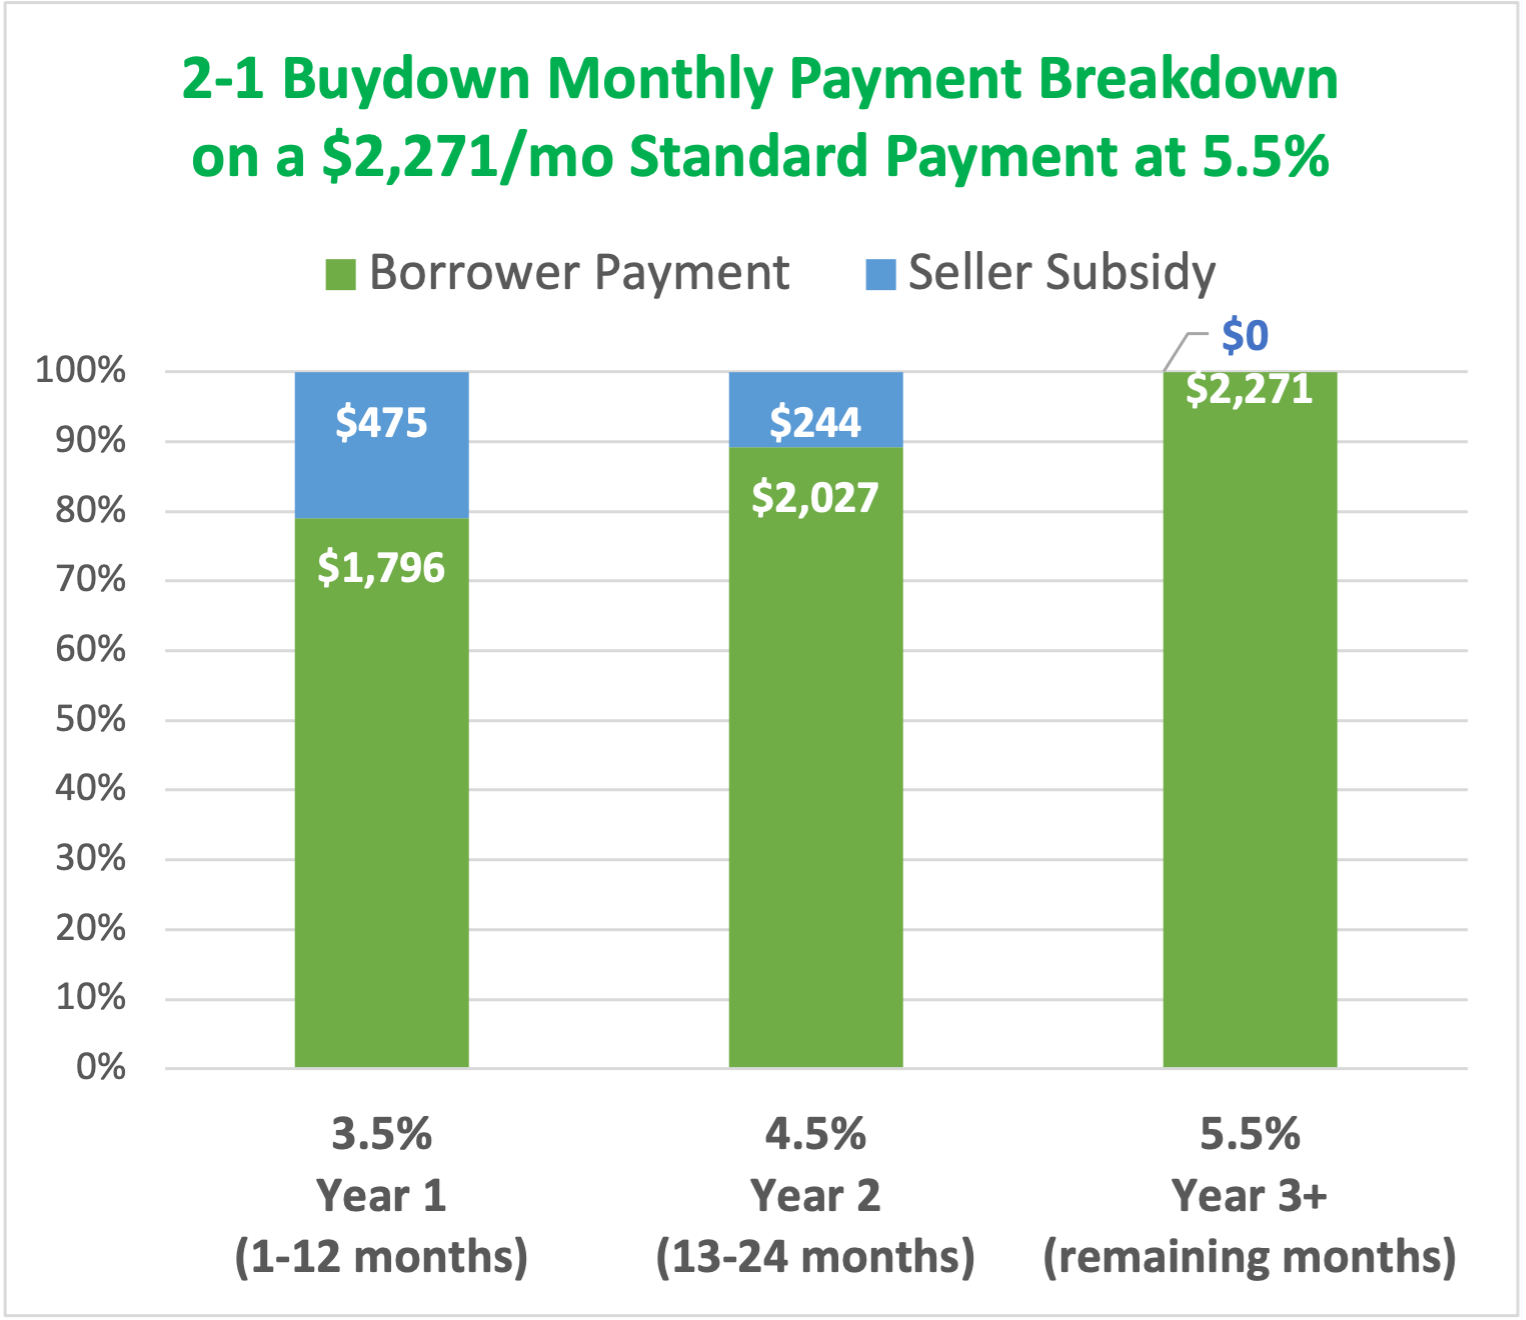 2-1 Buydown payment breakdown